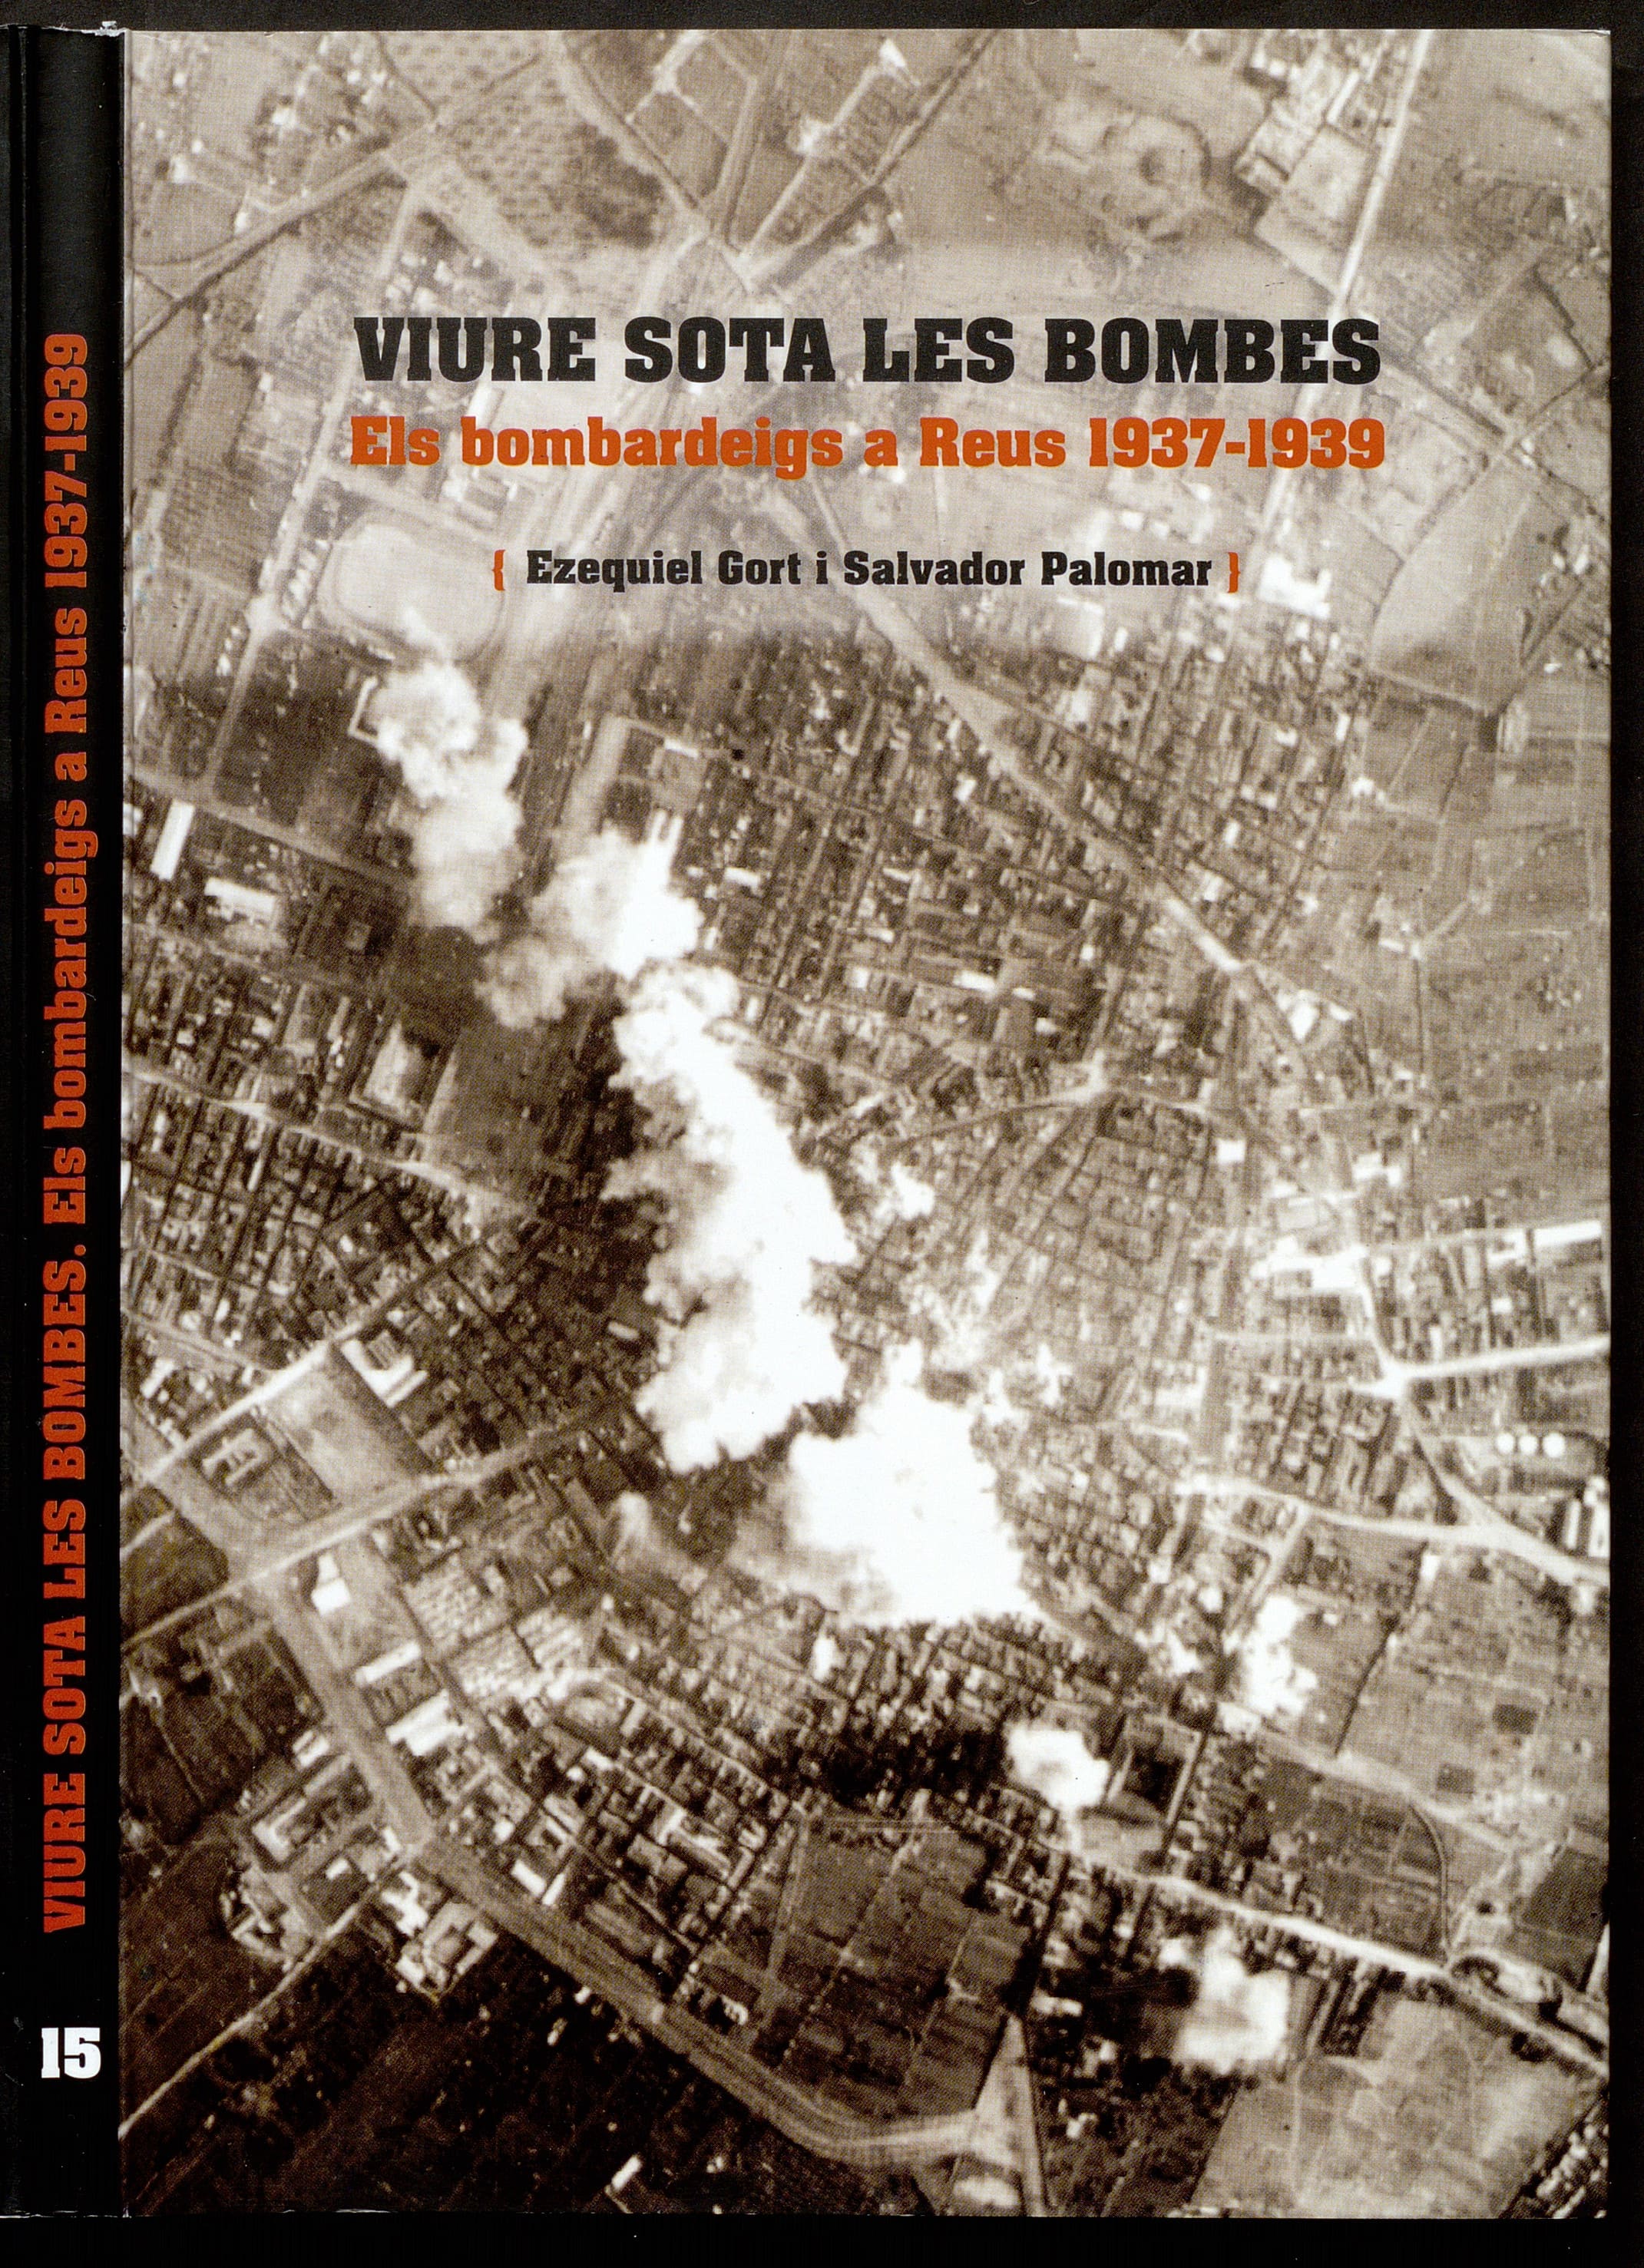 Viure sota les bombes. Els bombardeigs a Reus 1937-1939